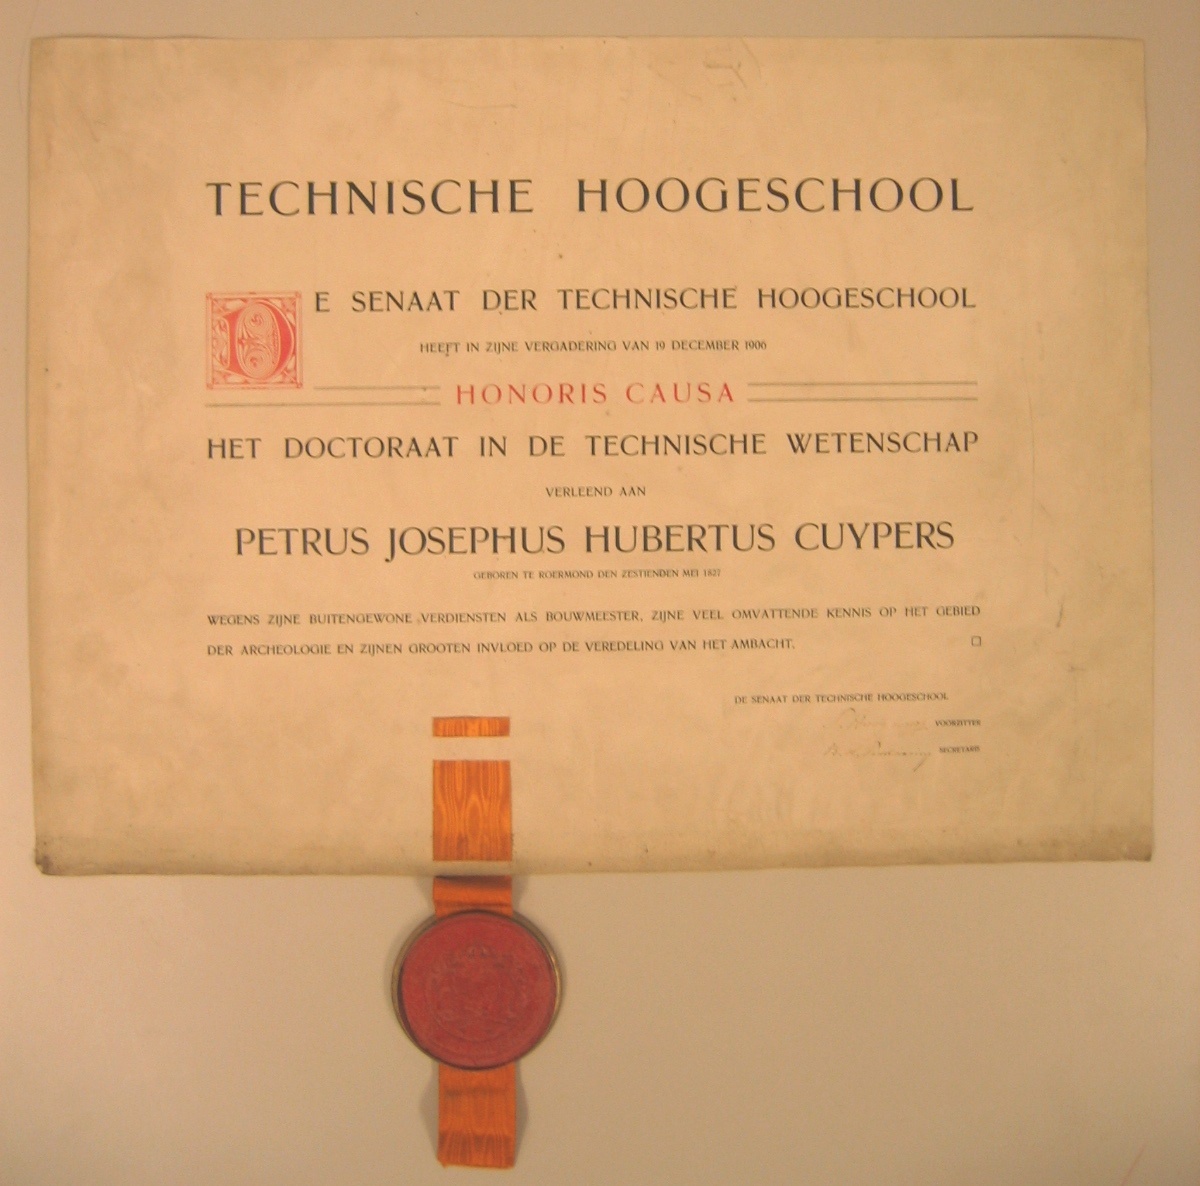 Doctoraat in de Technische Wetenschap van Petrus Josephus Hubertus Cuypers